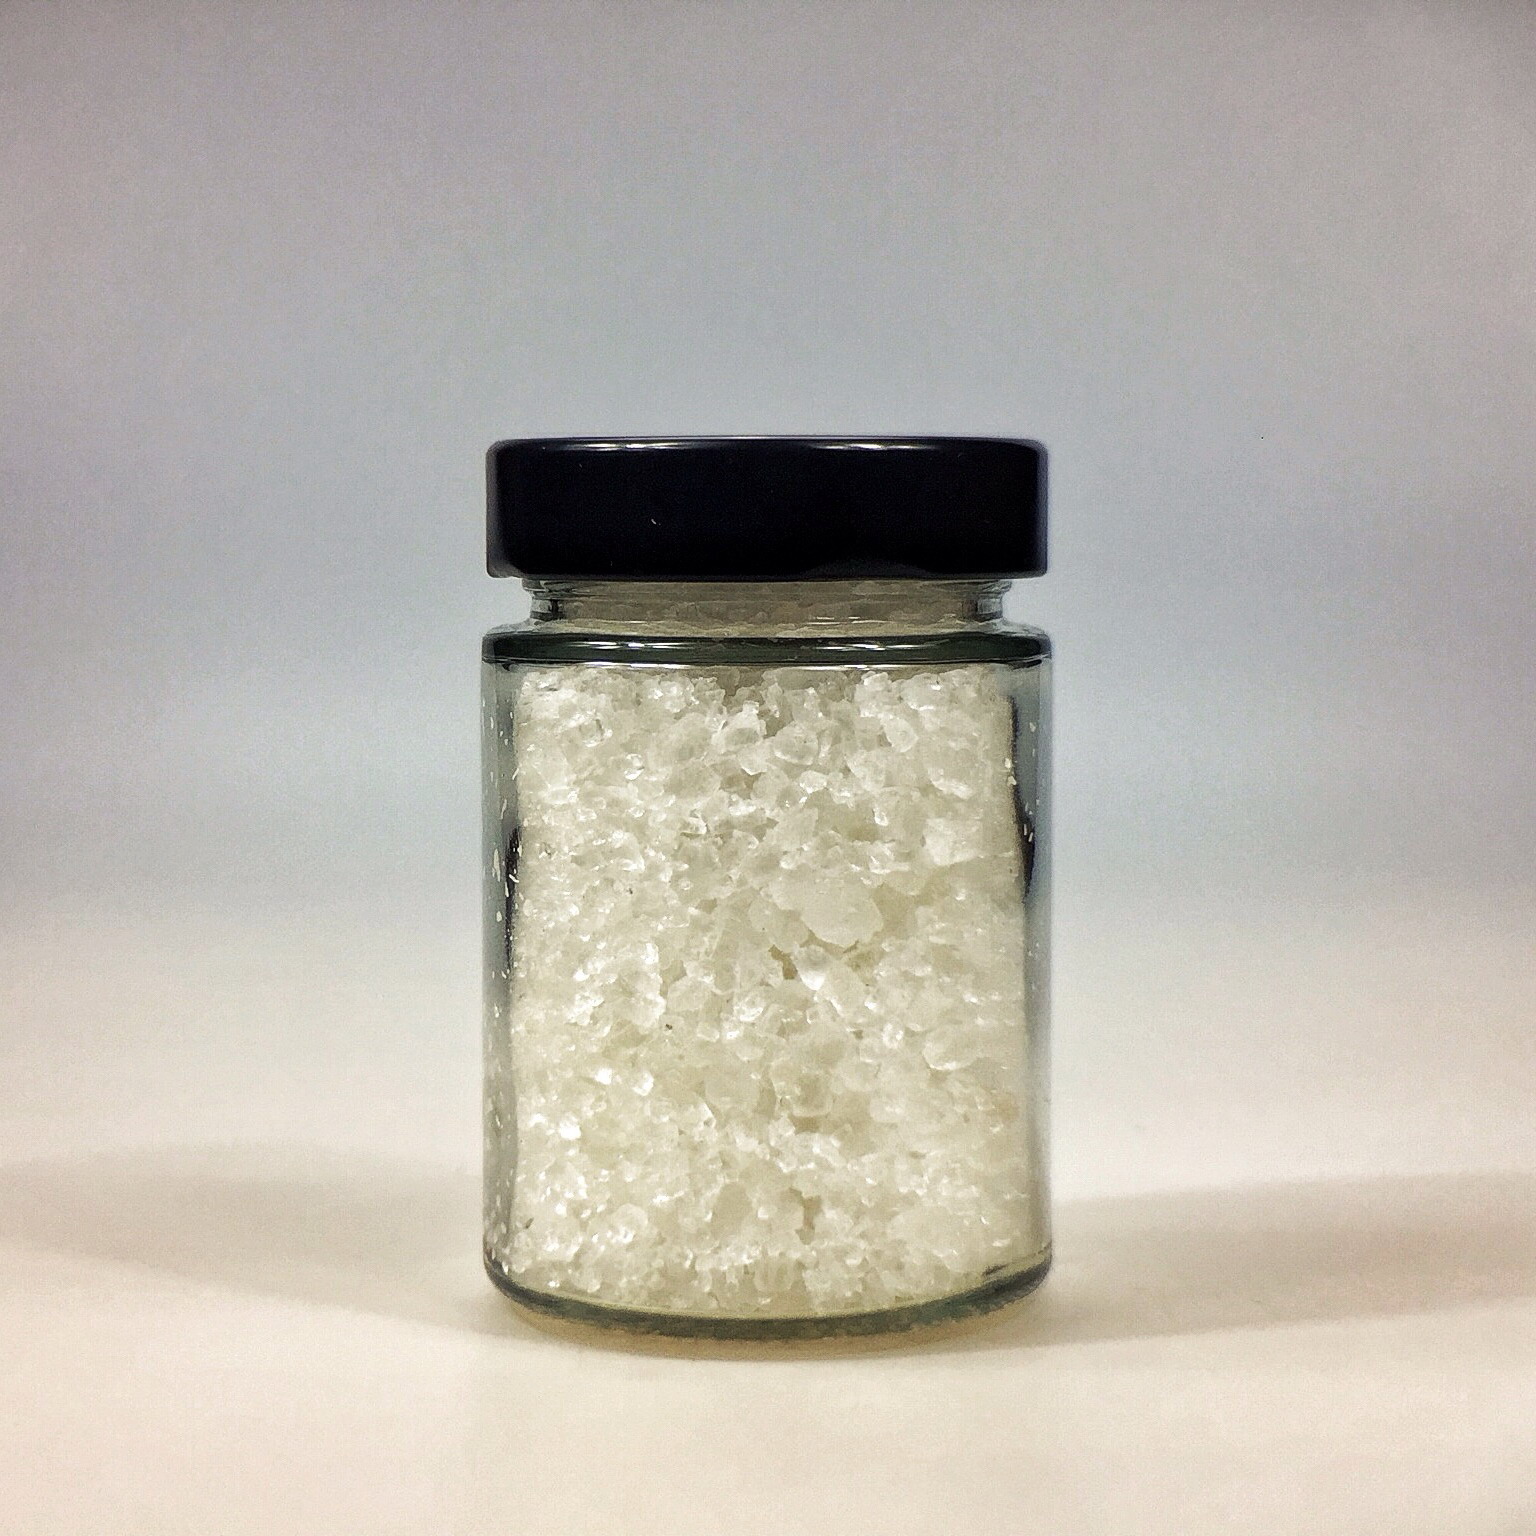 Halit Salz grob gemahlen für Salzmühle im kleinen Glas mit schwarzem Deckel